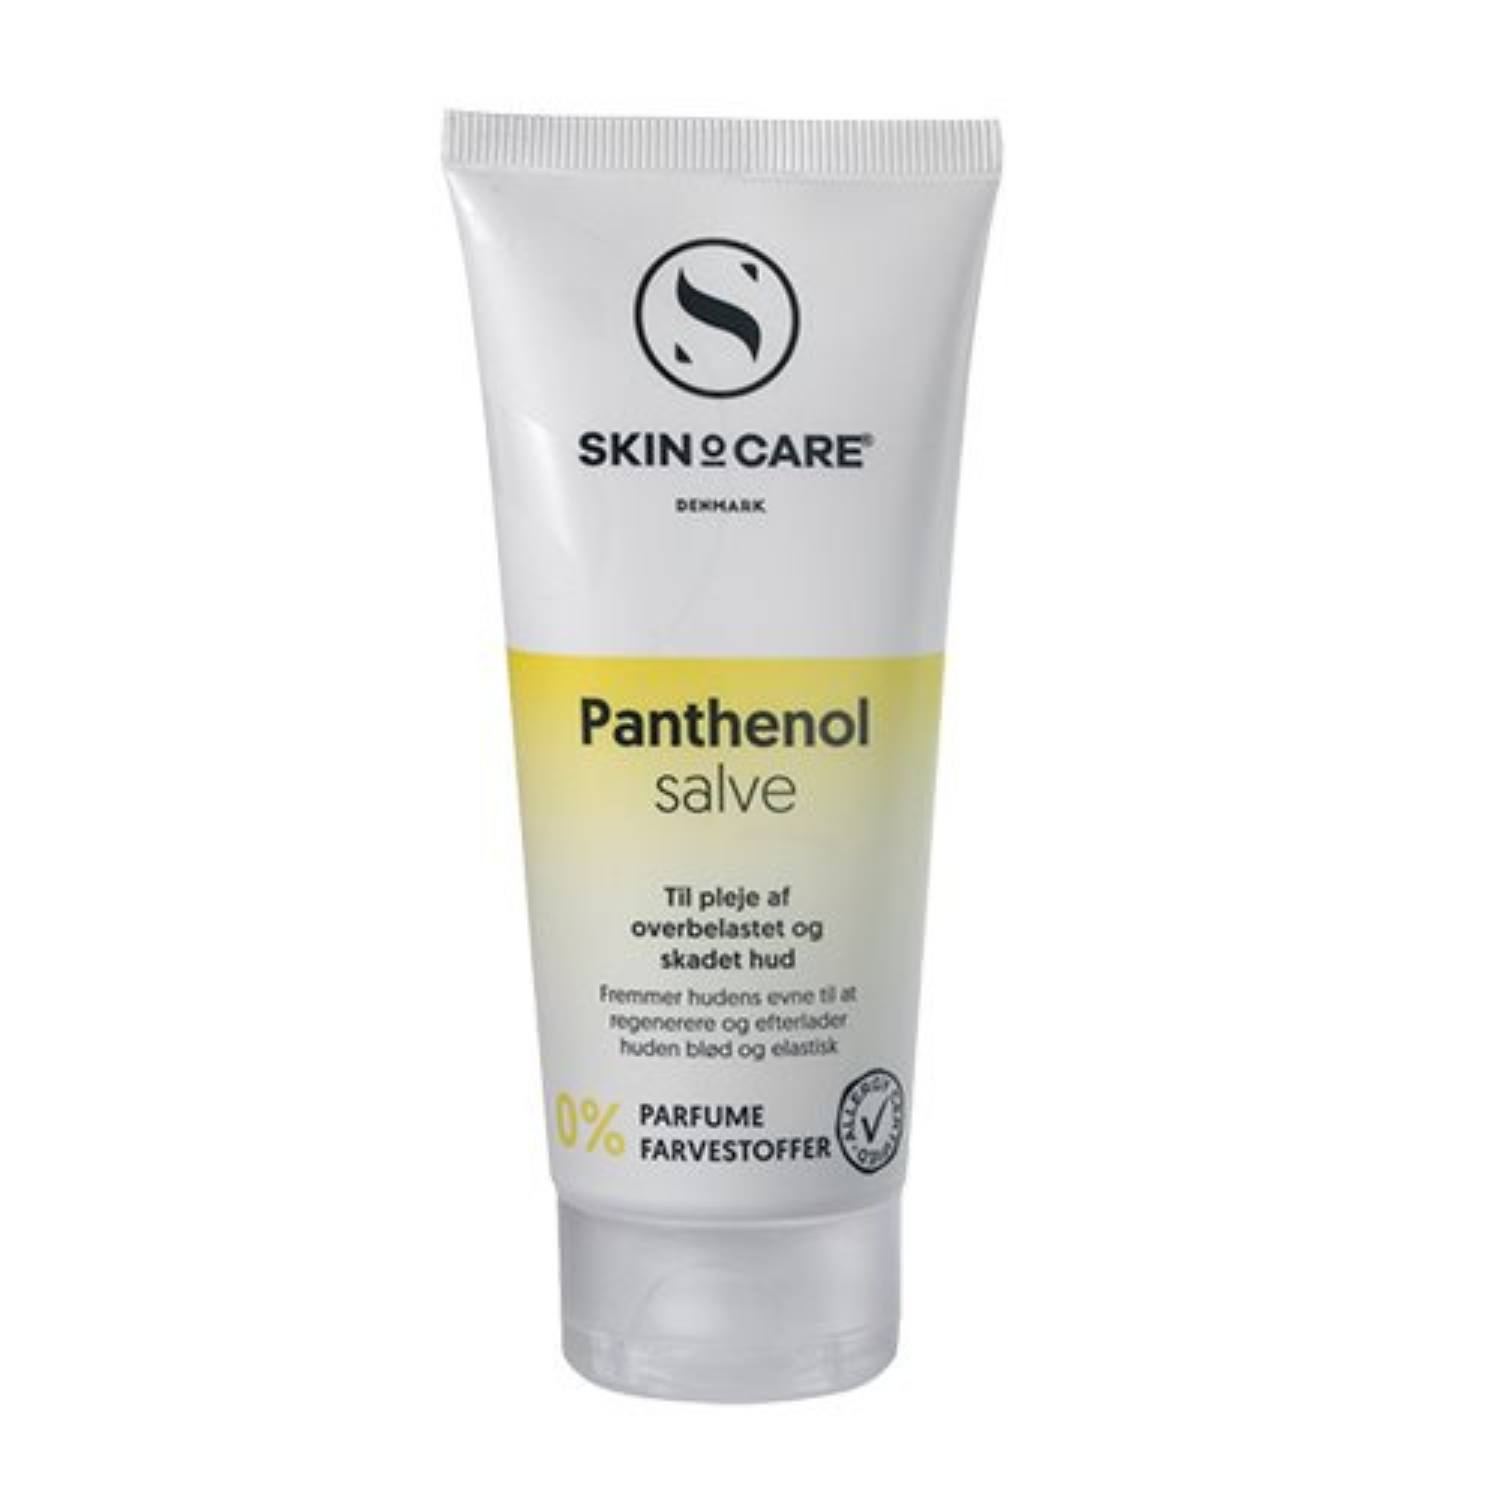 Billede af Panthenol salve (genopbygger tør/skællende hud) - Cremer fra Astma Allergi Shoppen